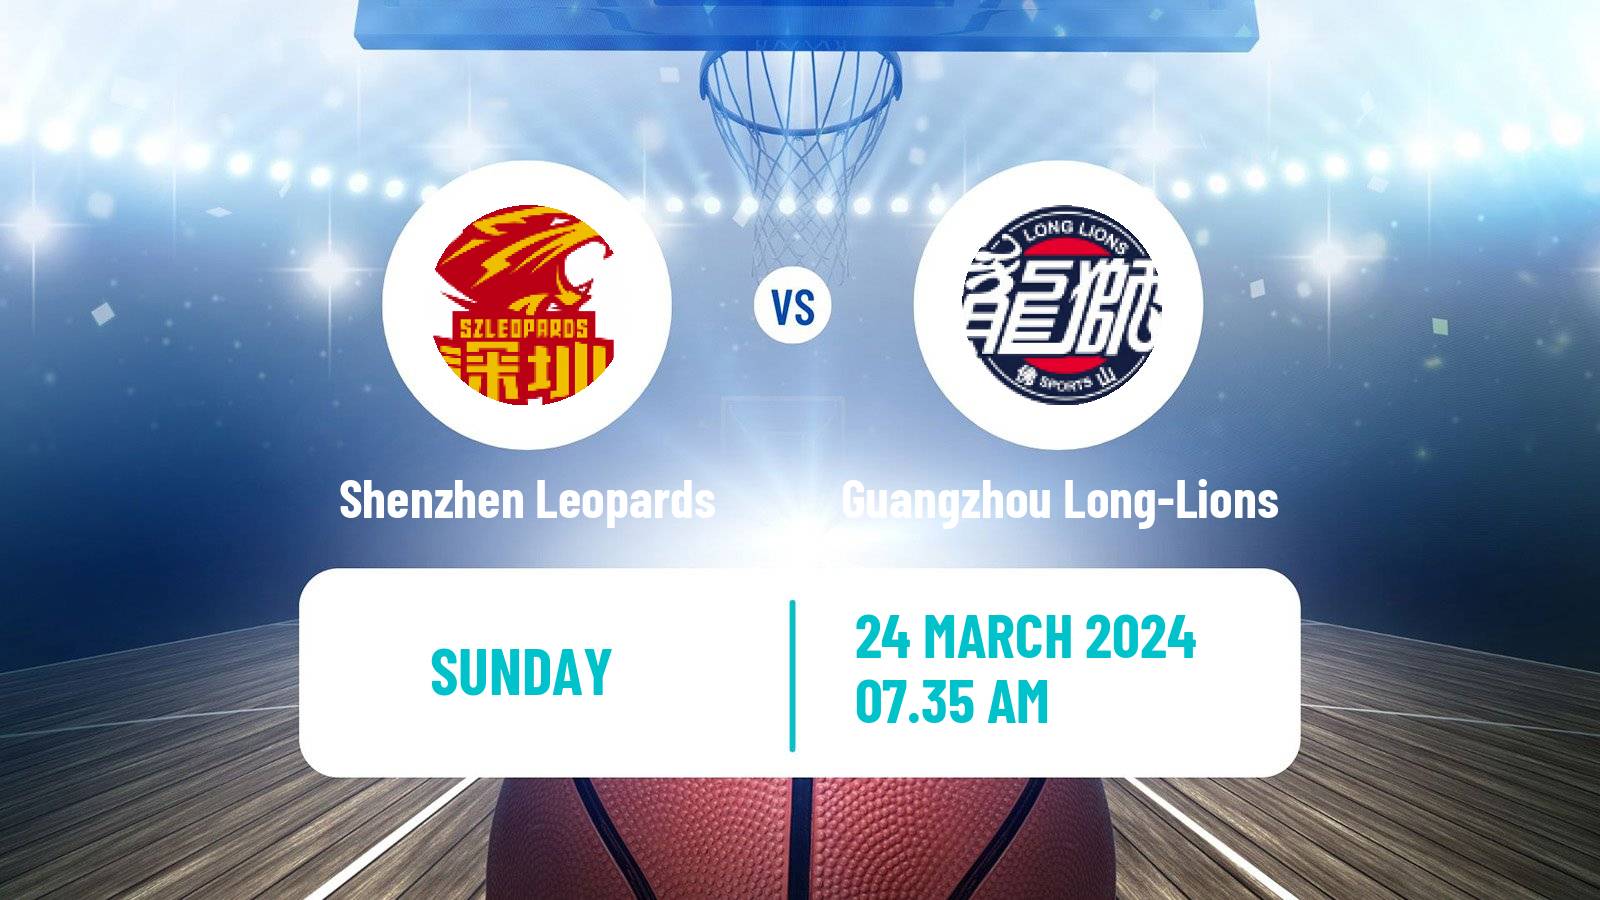 Basketball CBA Shenzhen Leopards - Guangzhou Long-Lions